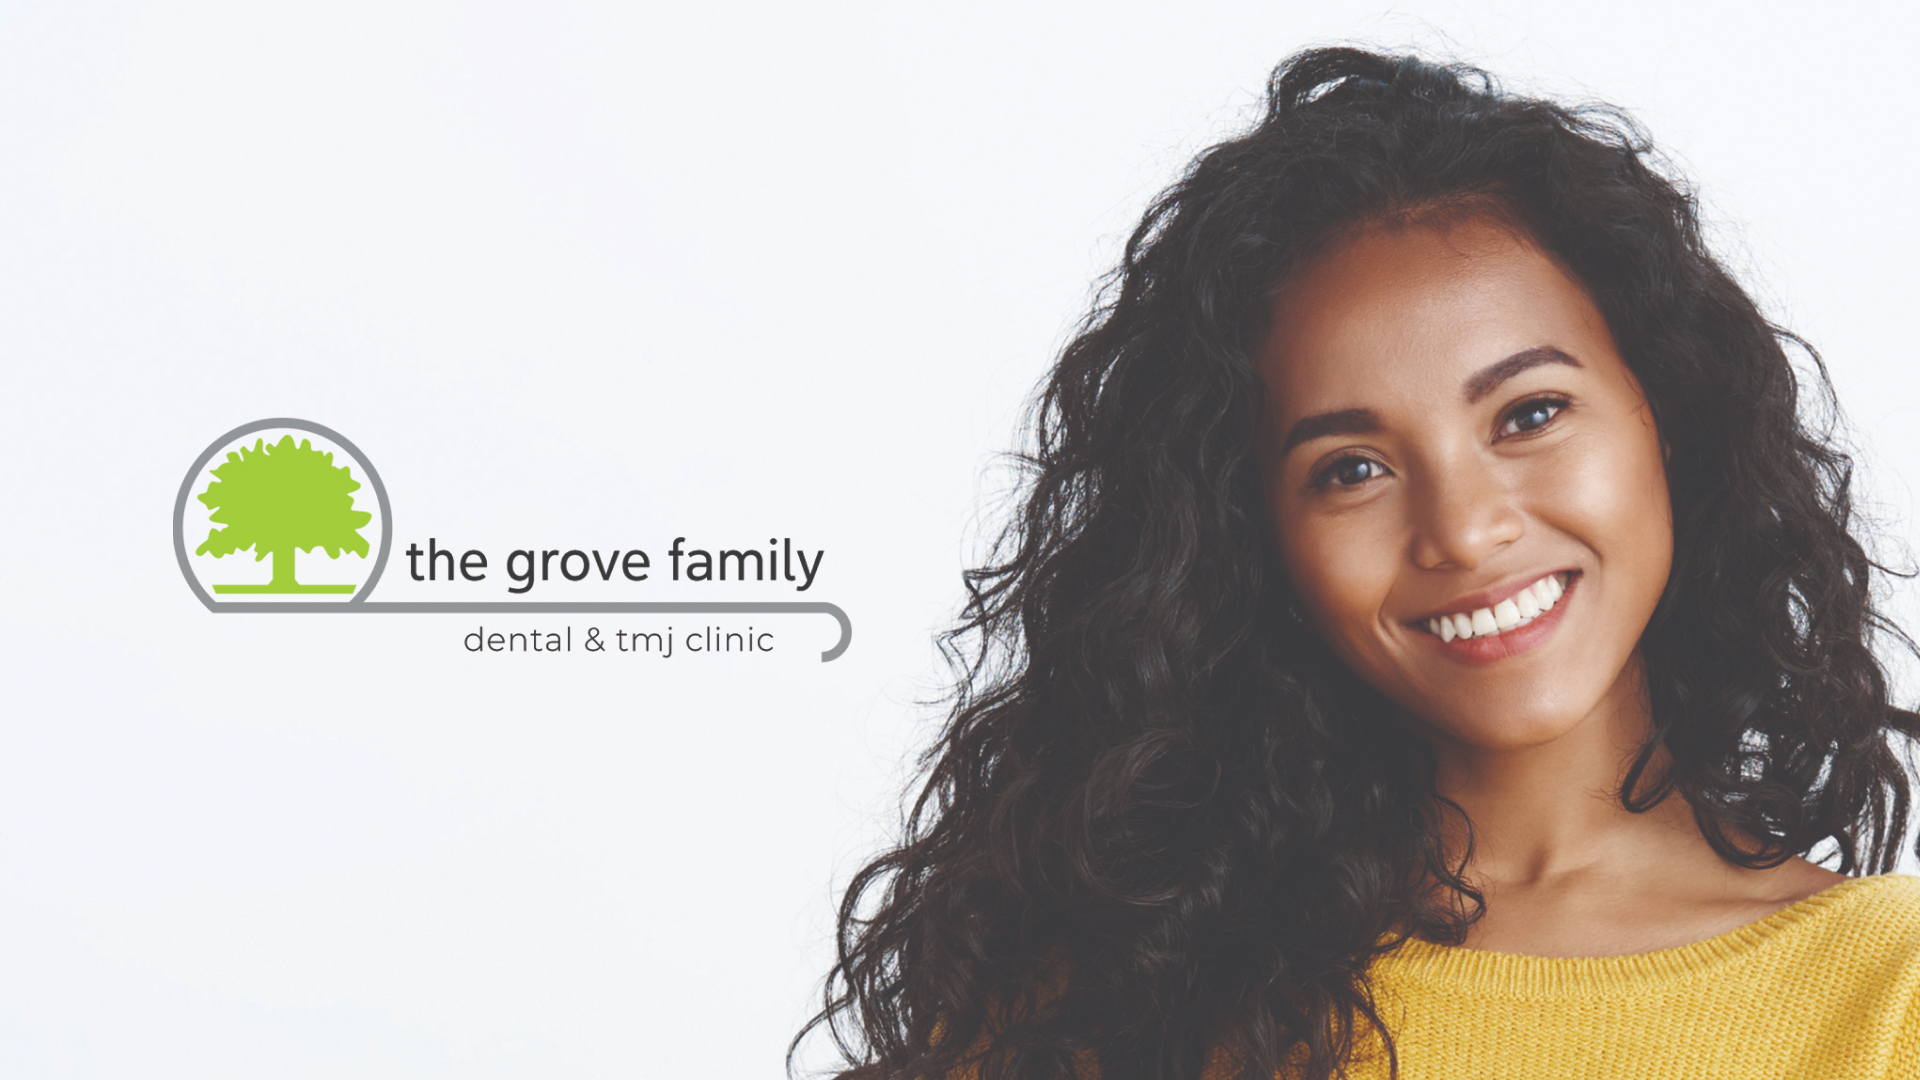 The Grove Family Dental and TMJ Clinic: Dr. John Gernetzke